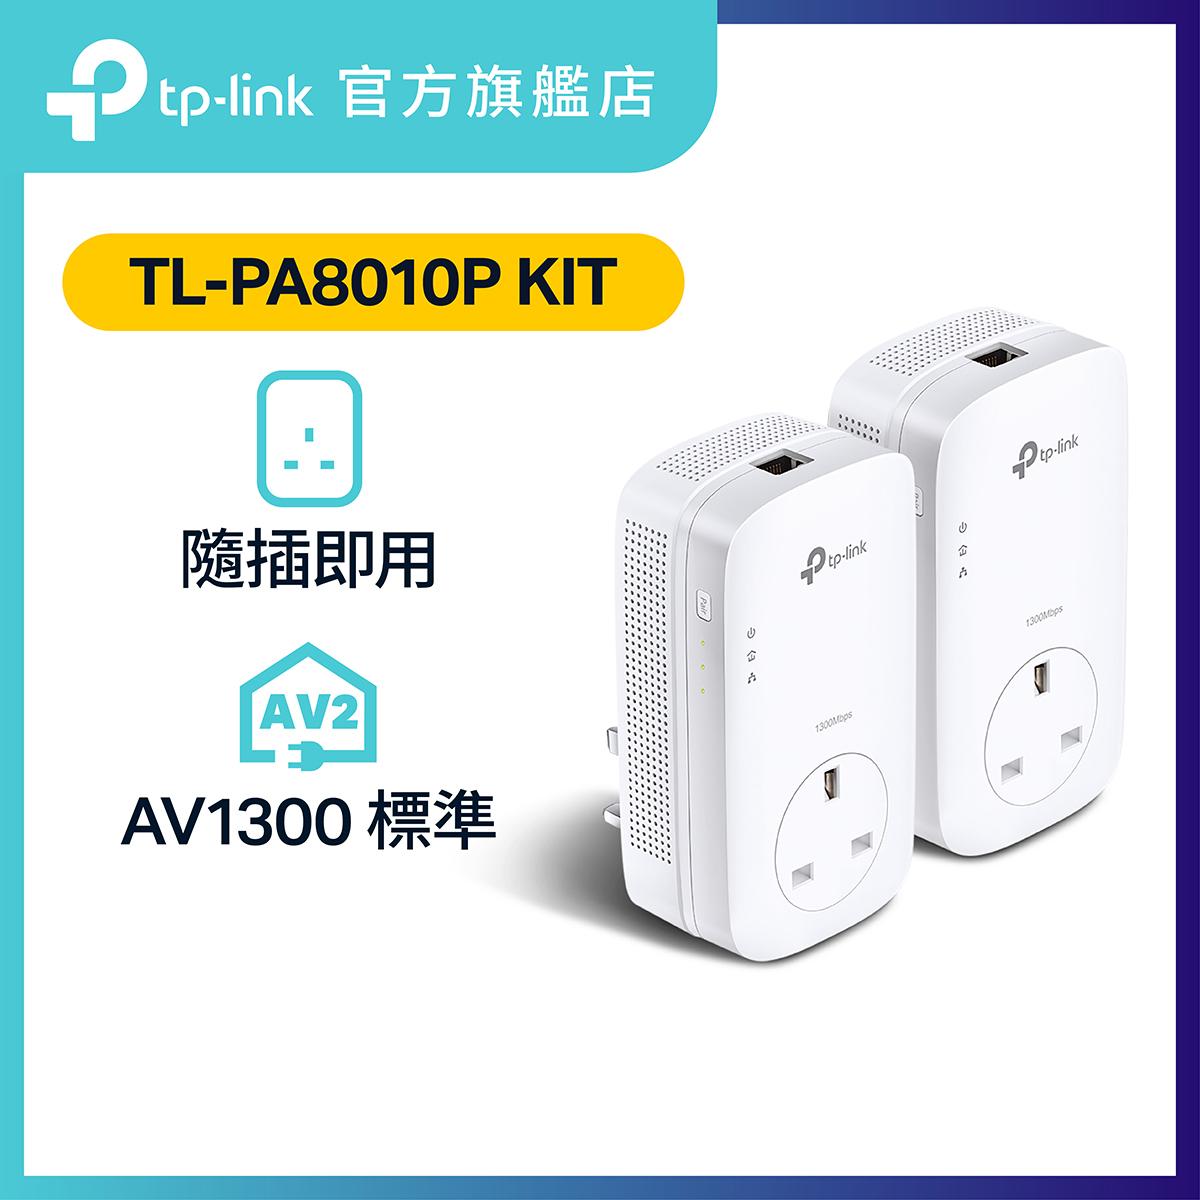 TL-PA8010P KIT AV1200 Gigabit電力線網路橋接器雙包組